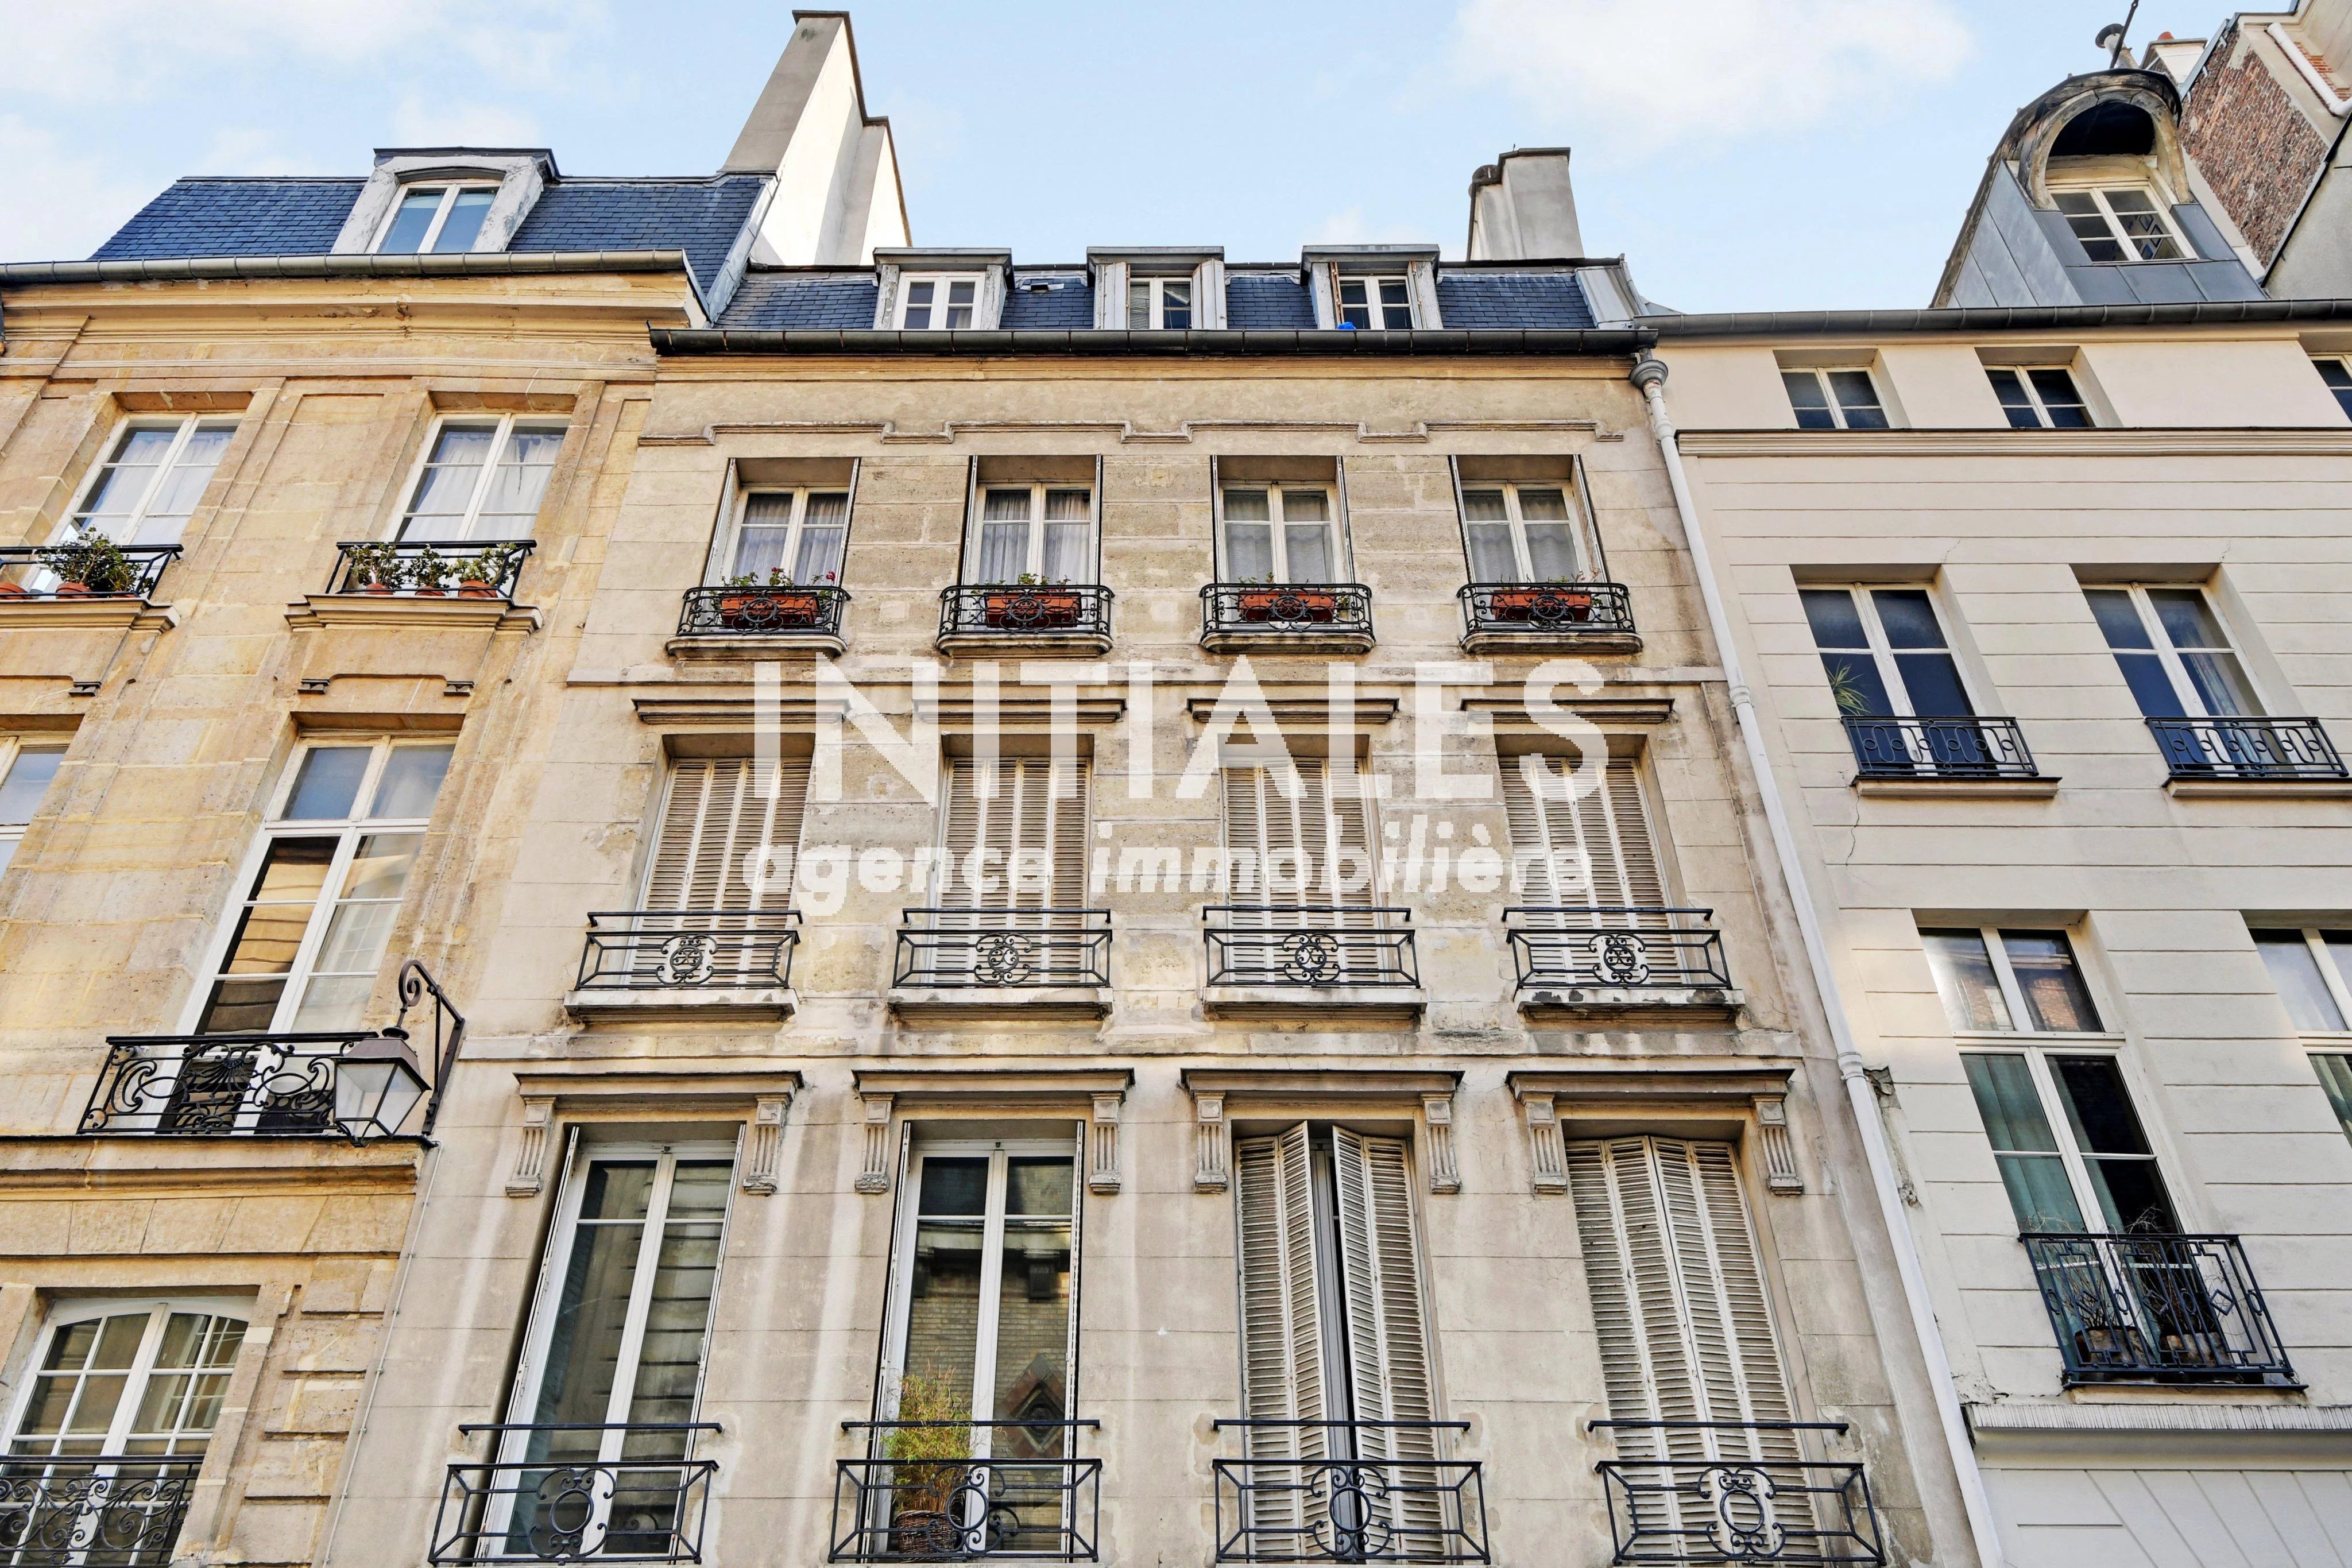 Sale Apartment - Paris 3rd (Paris 3ème) Archives